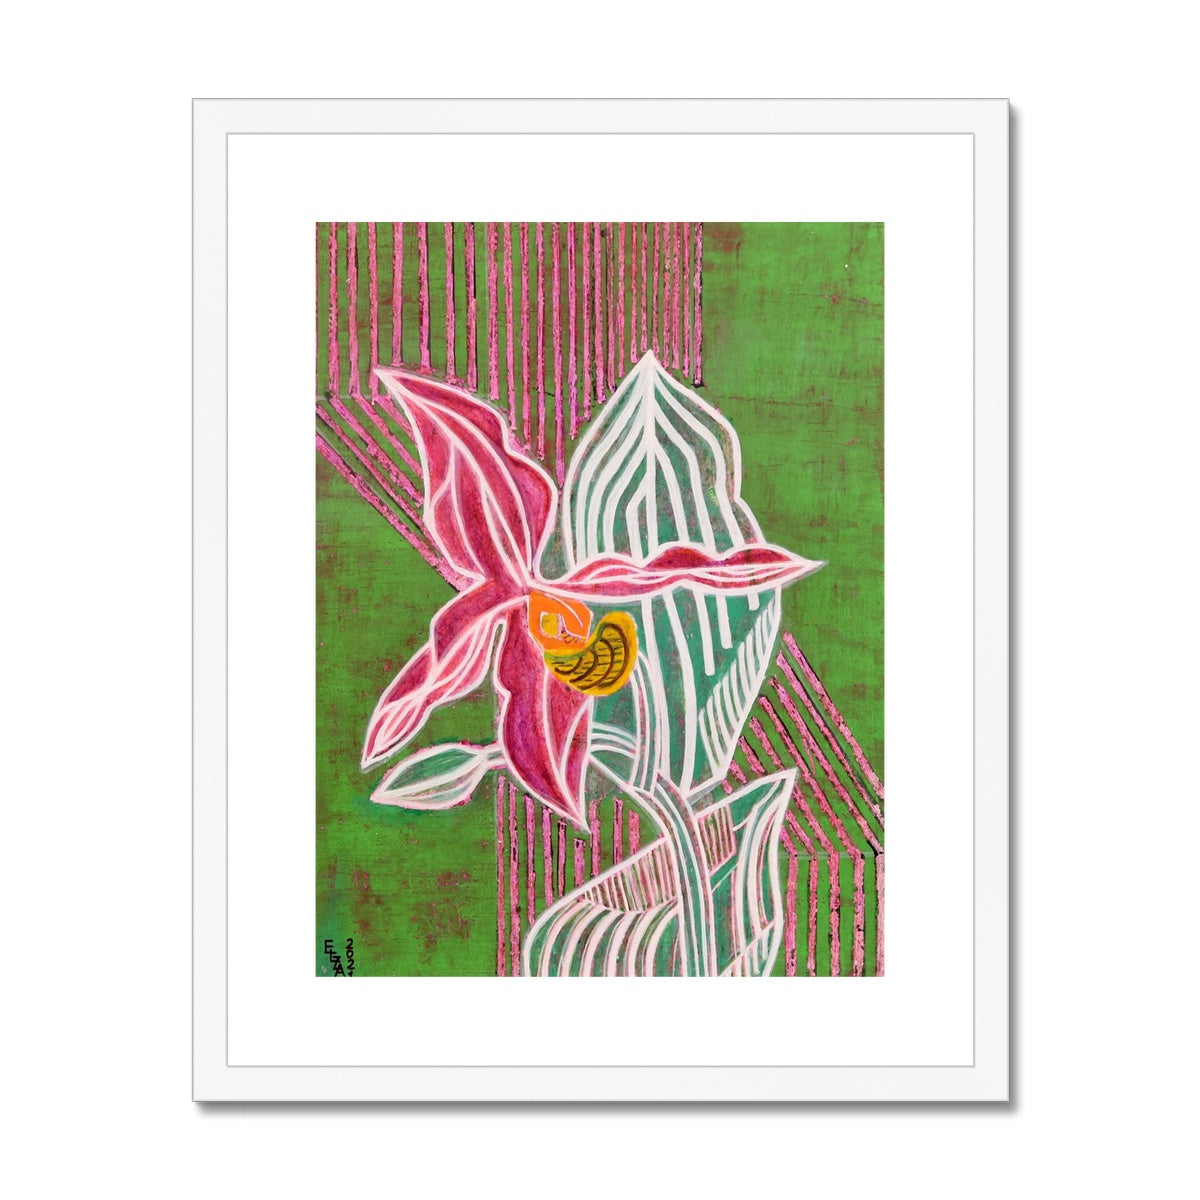 Flower, Framed & Mounted Print